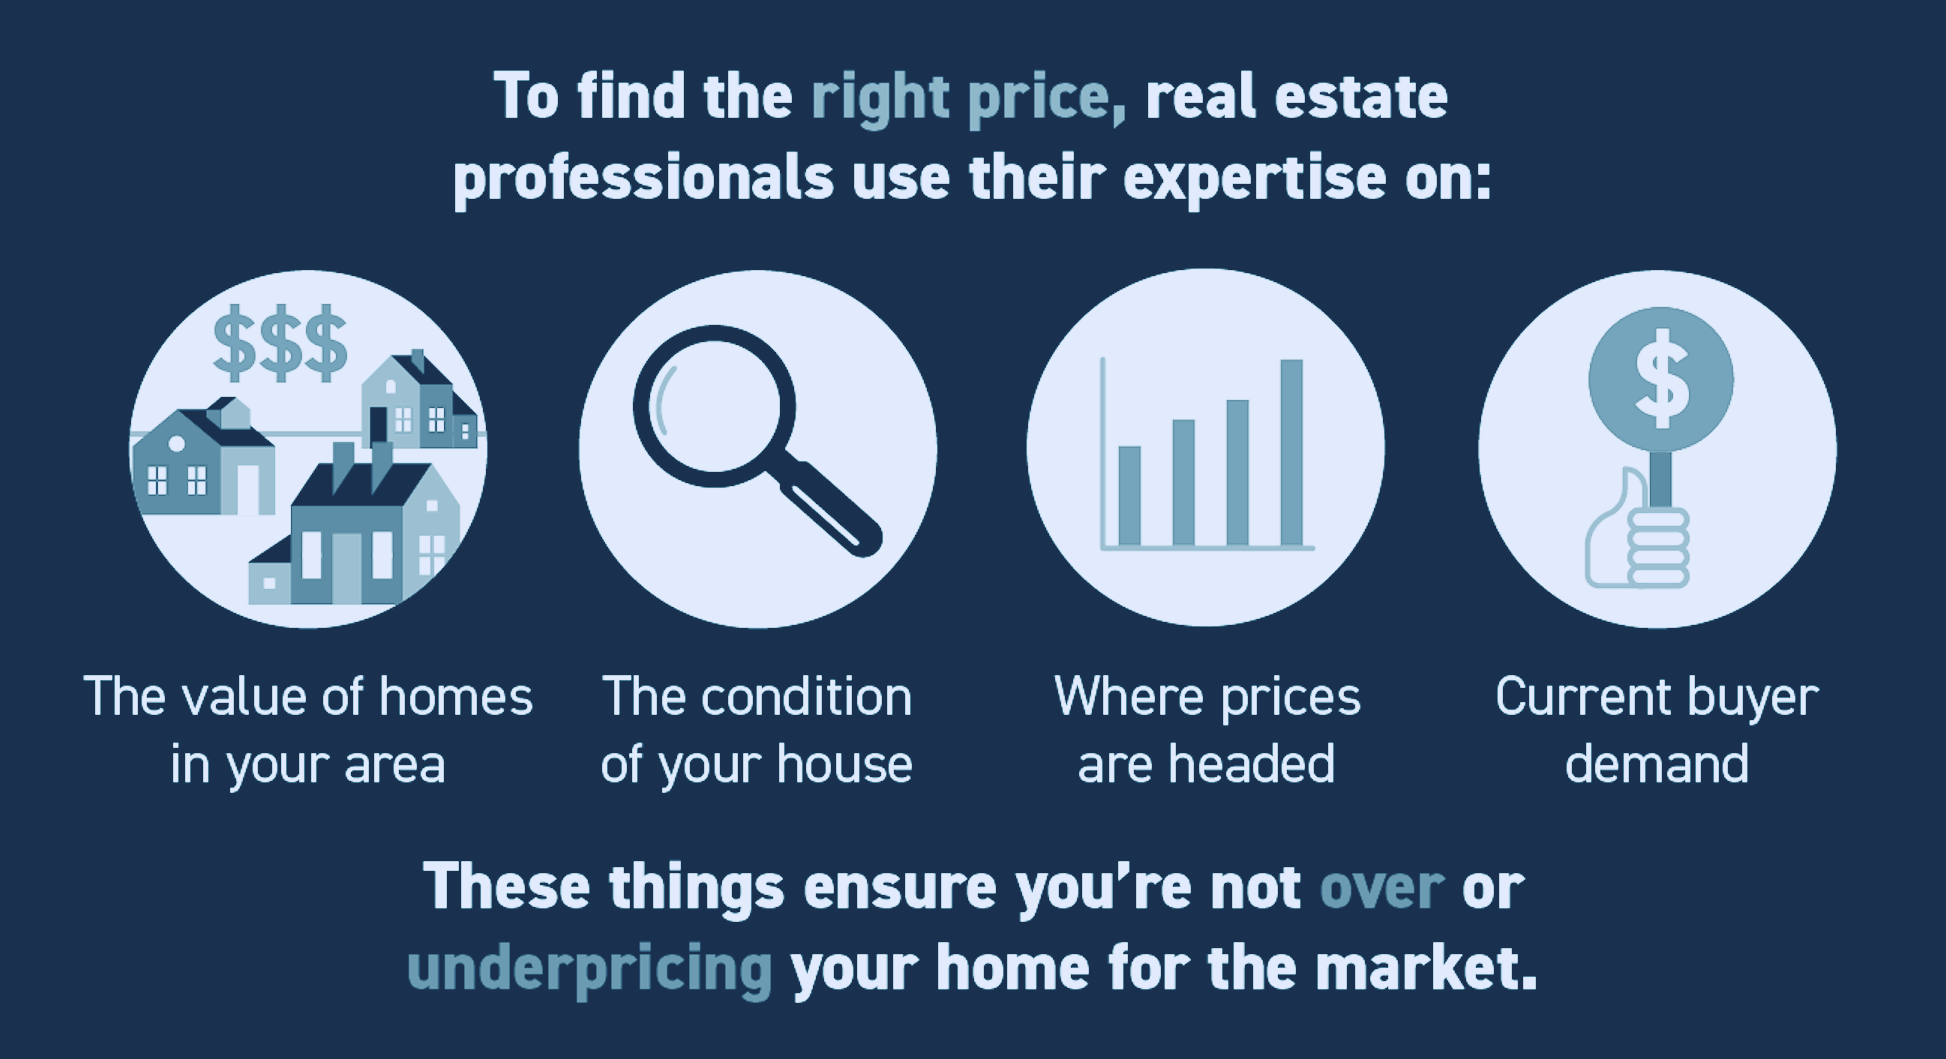 De ce este important prețurile în domeniul imobiliar?